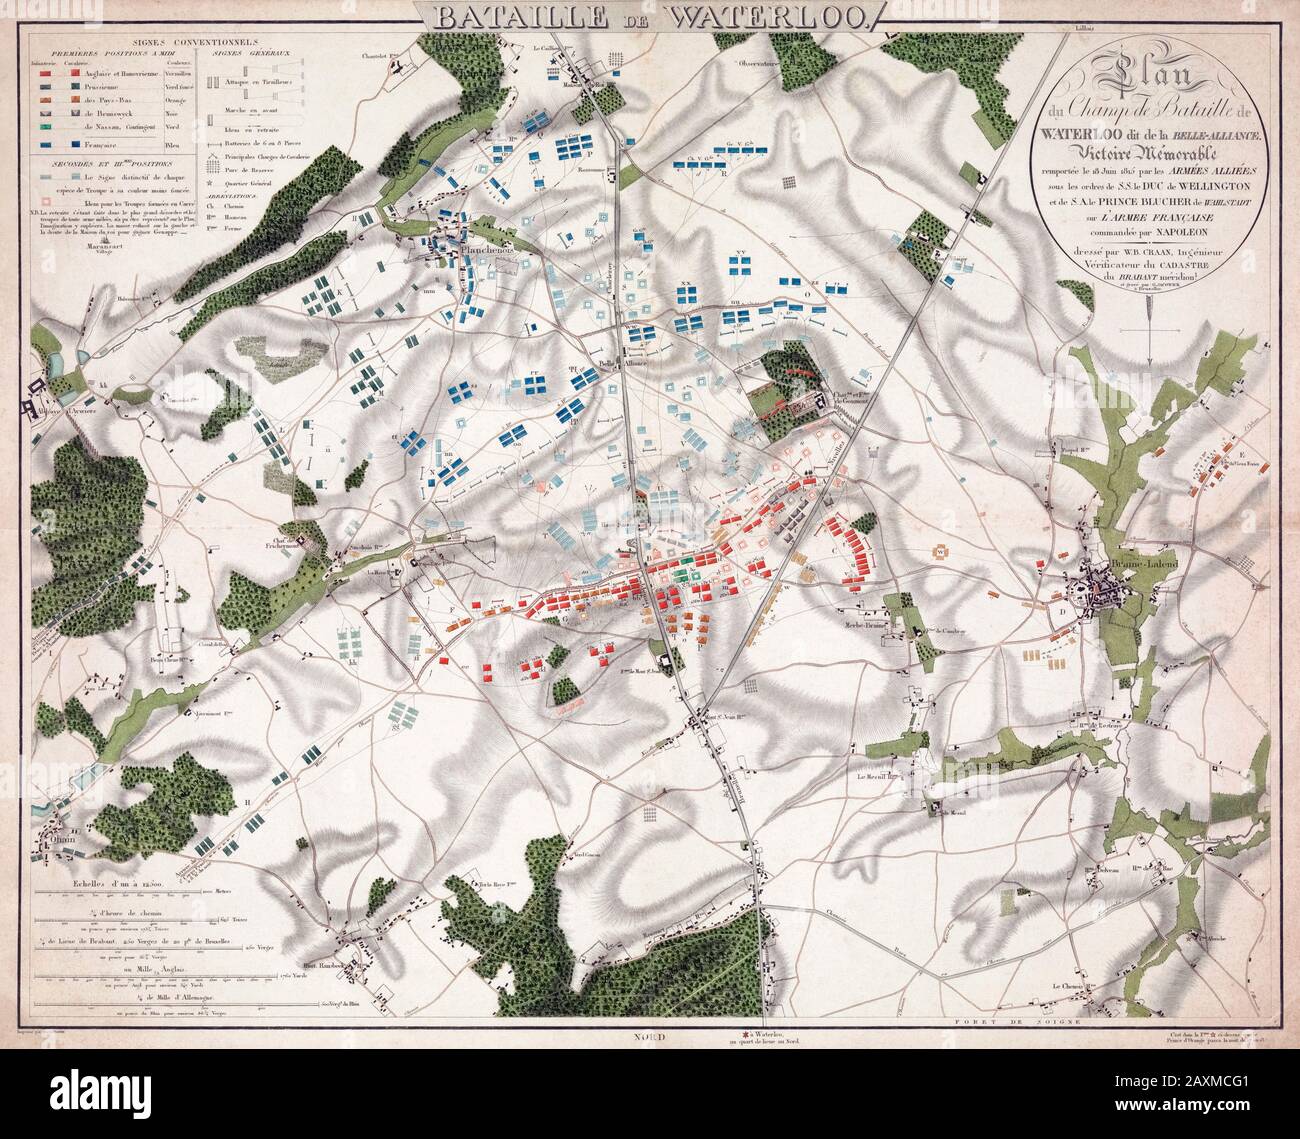 Piano della Battaglia di Waterloo, 18 giugno 1815. Foto Stock